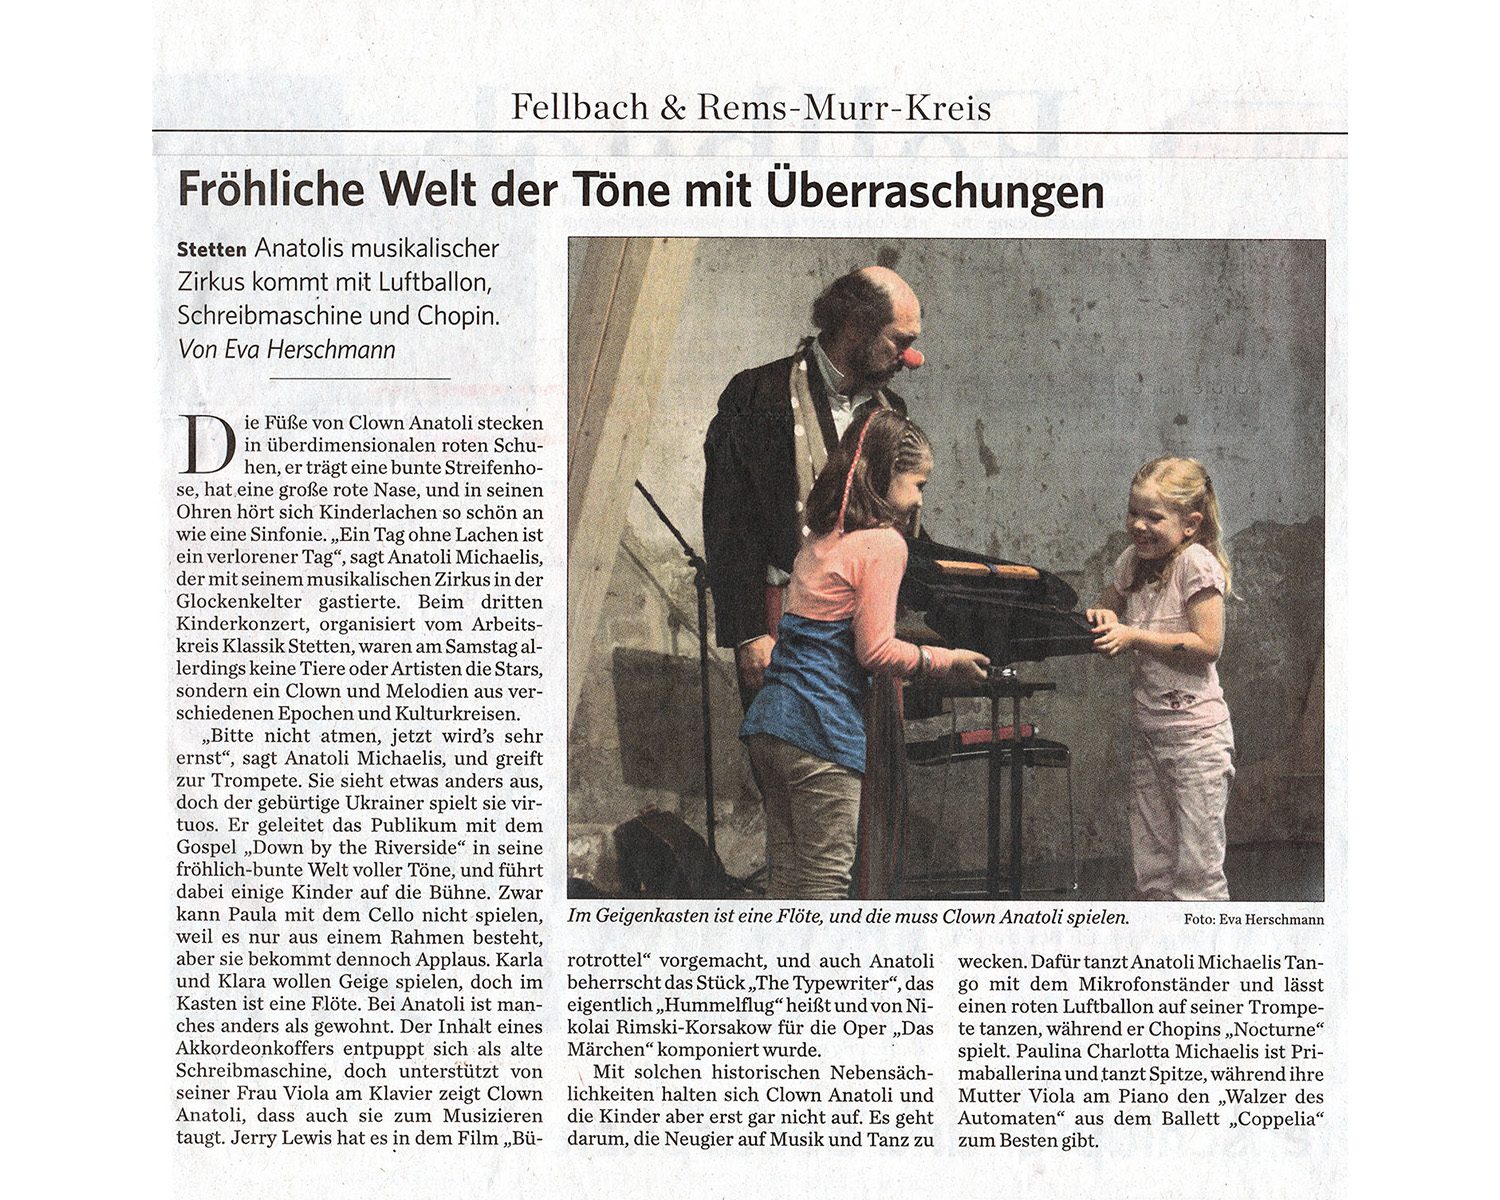 Stuttgarter Zeitung, 2012-07-23